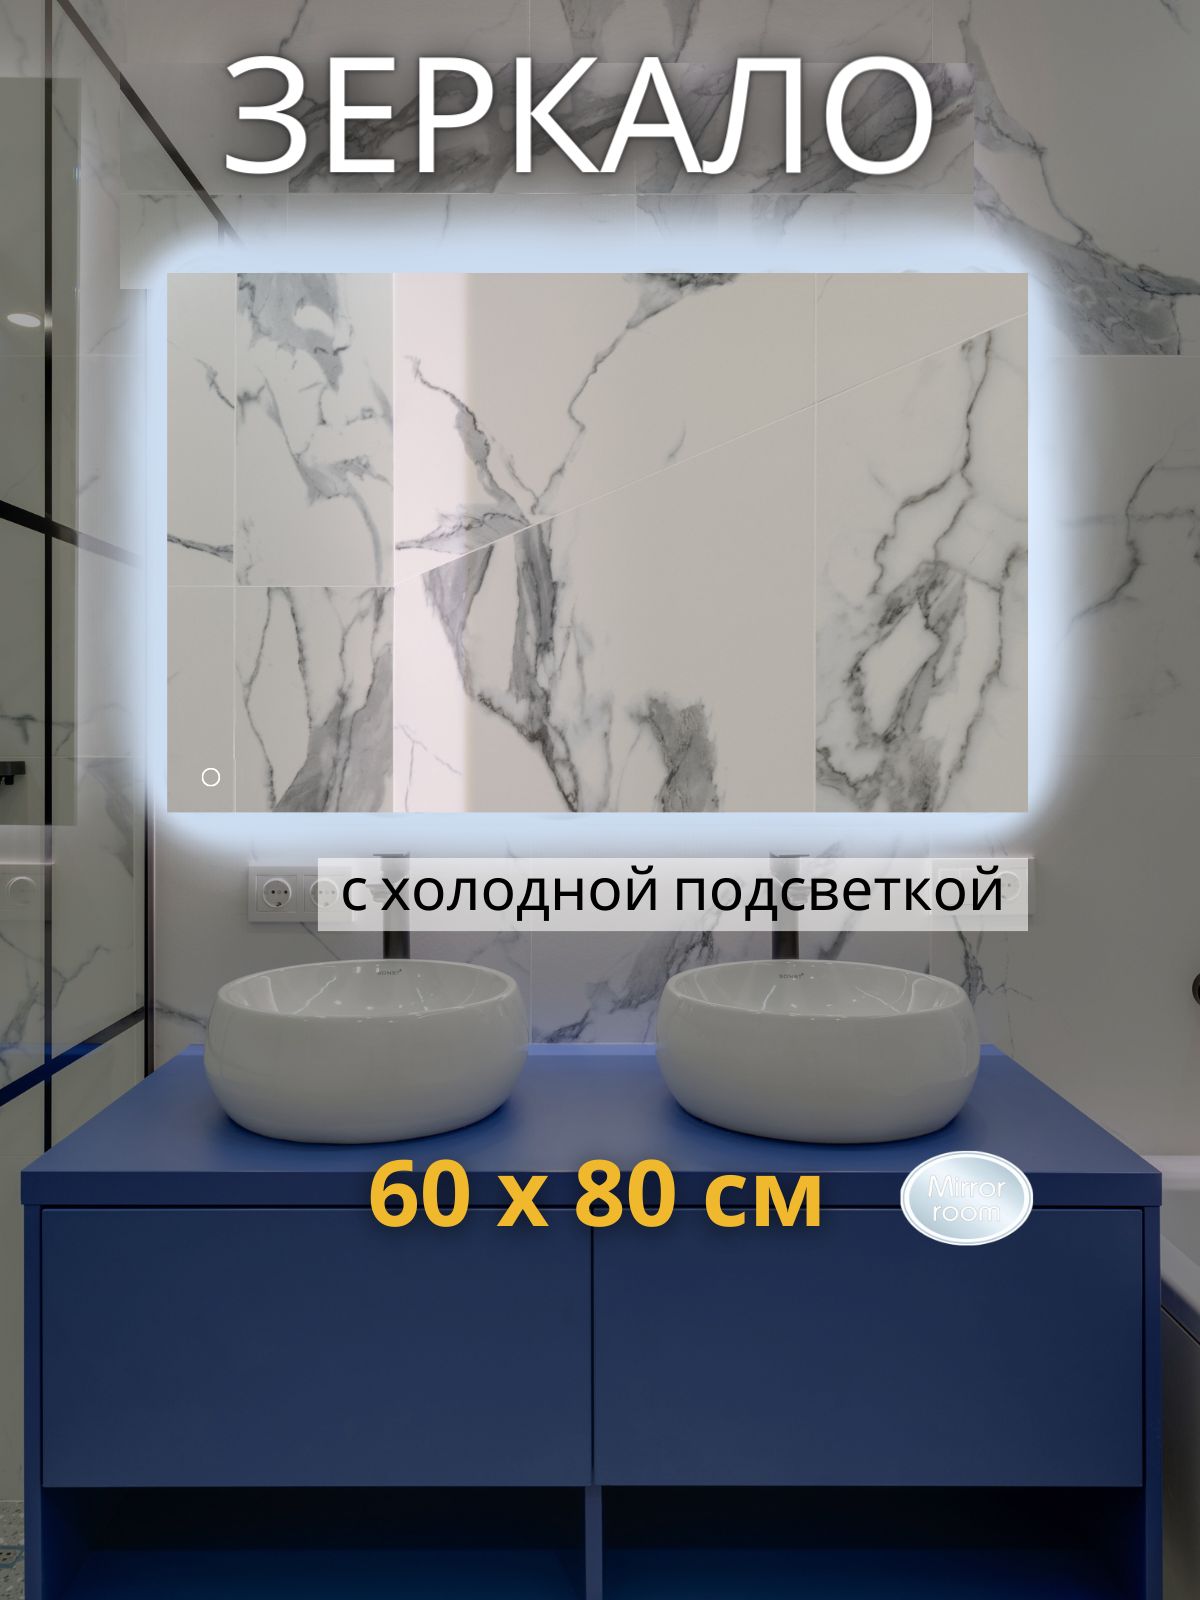 MirrorroomЗеркалодляванной"зеркаласподсветкойпрямоугольные"прямоугольноегоризонтальноесподсветкой6000К(холодныйсвет)исенсорнымуправлением"Mirrorroom6080",80смх60см